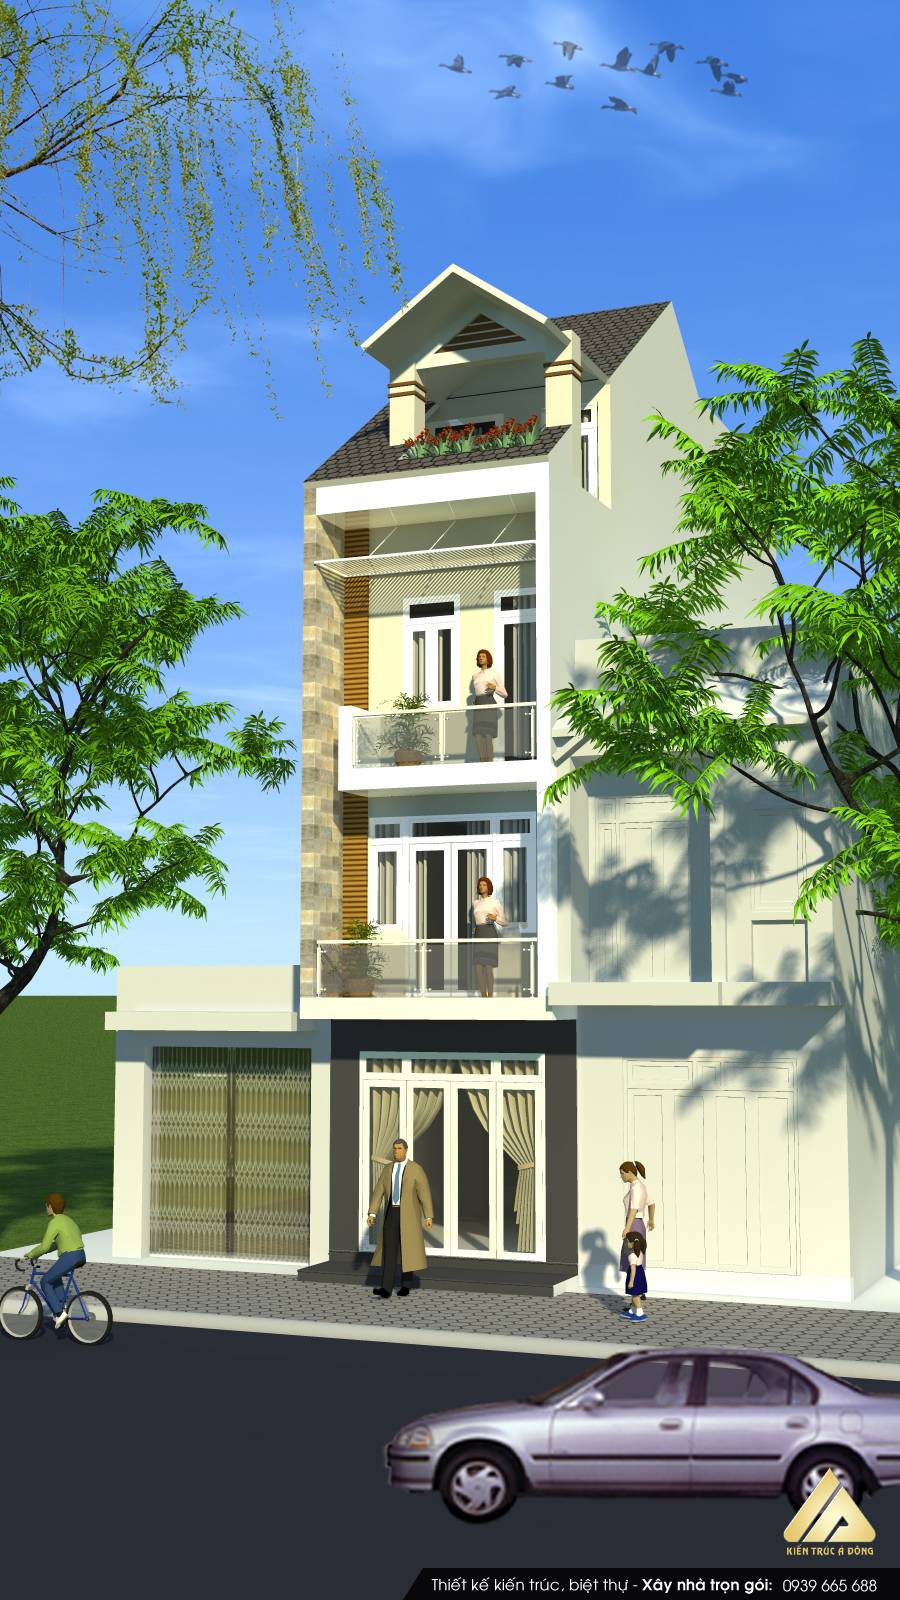 Chọn lọc các mẫu nhà phố đẹp nhất việt nam > Mẫu nhà phố 4 tầng hiện đại, sang trọng tại TP. Hạ Long